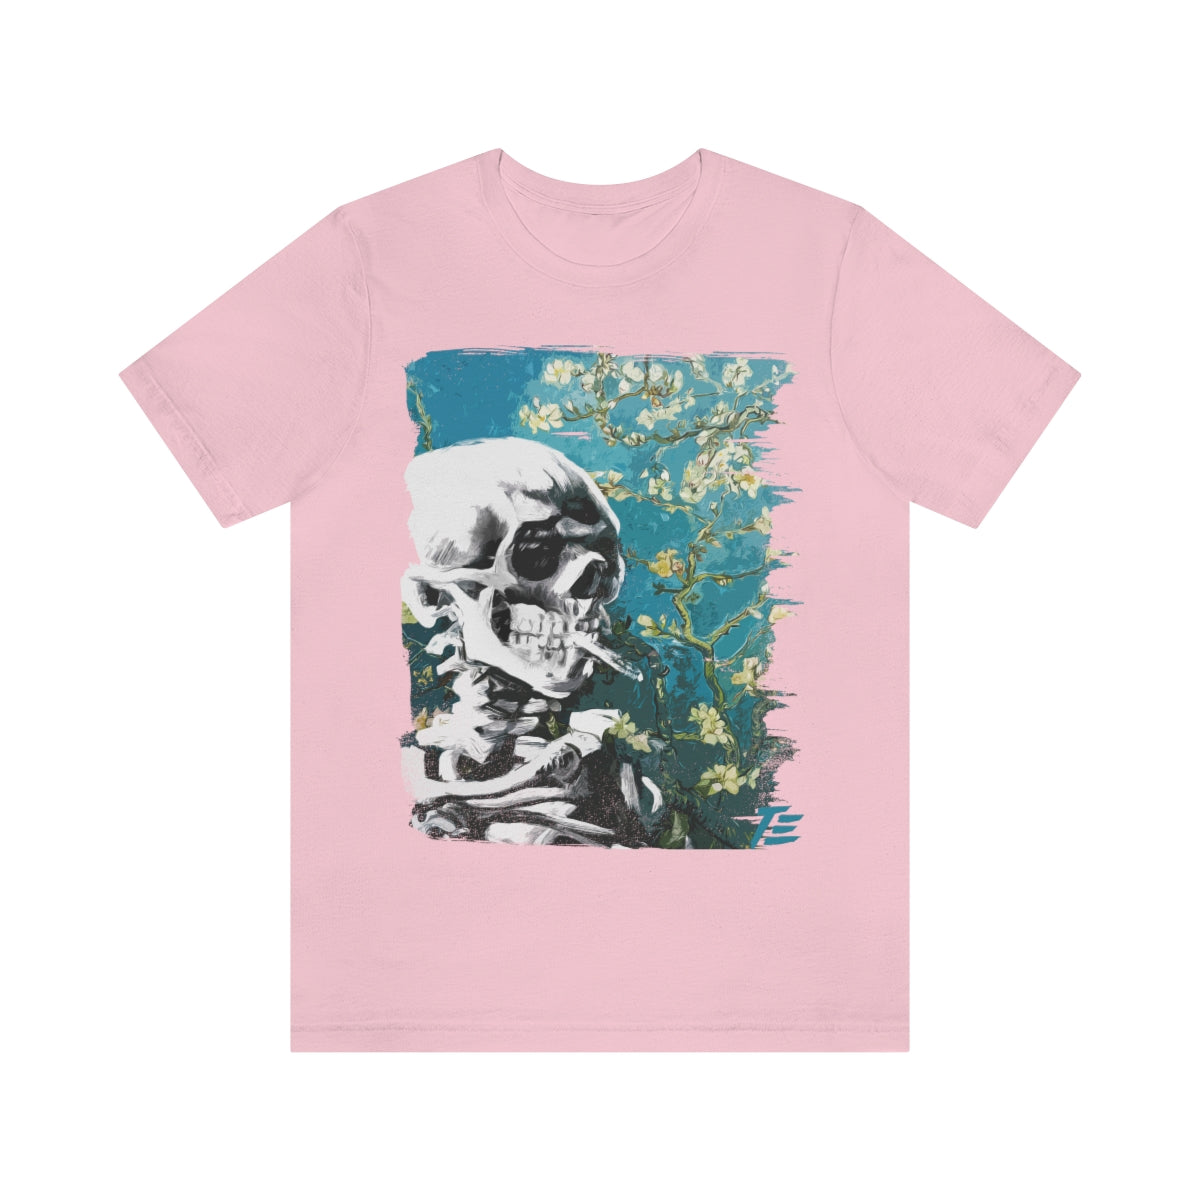 Skull With Burning Cigarette on cherry Blossom - Van Gogh Tribute | Art Freak T-shirt